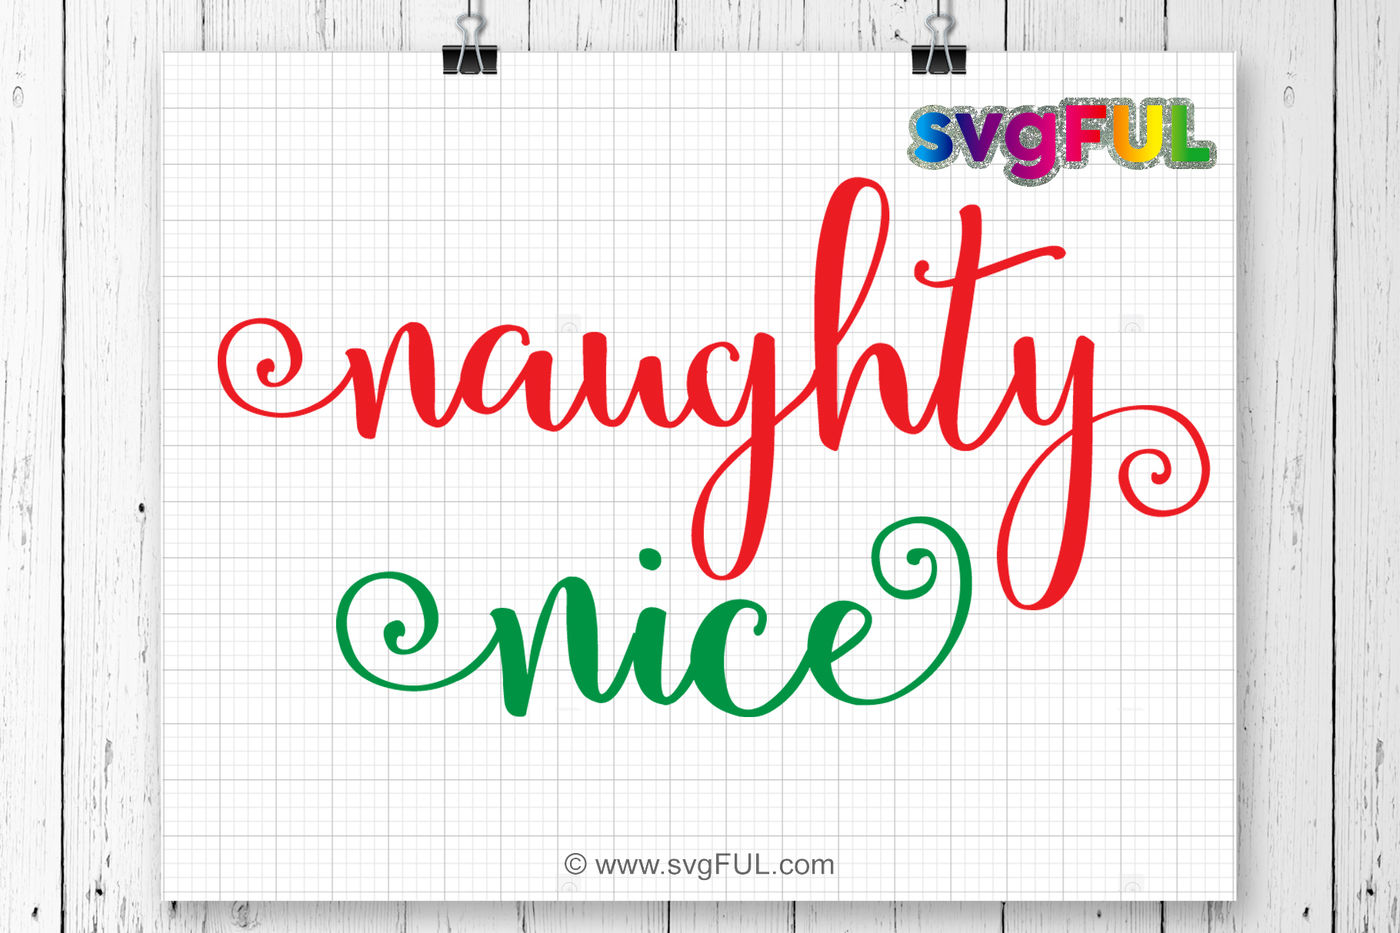 Download Naughty Nice Svg, Naughty or Nice Svg, Merry Christmas Svg ...